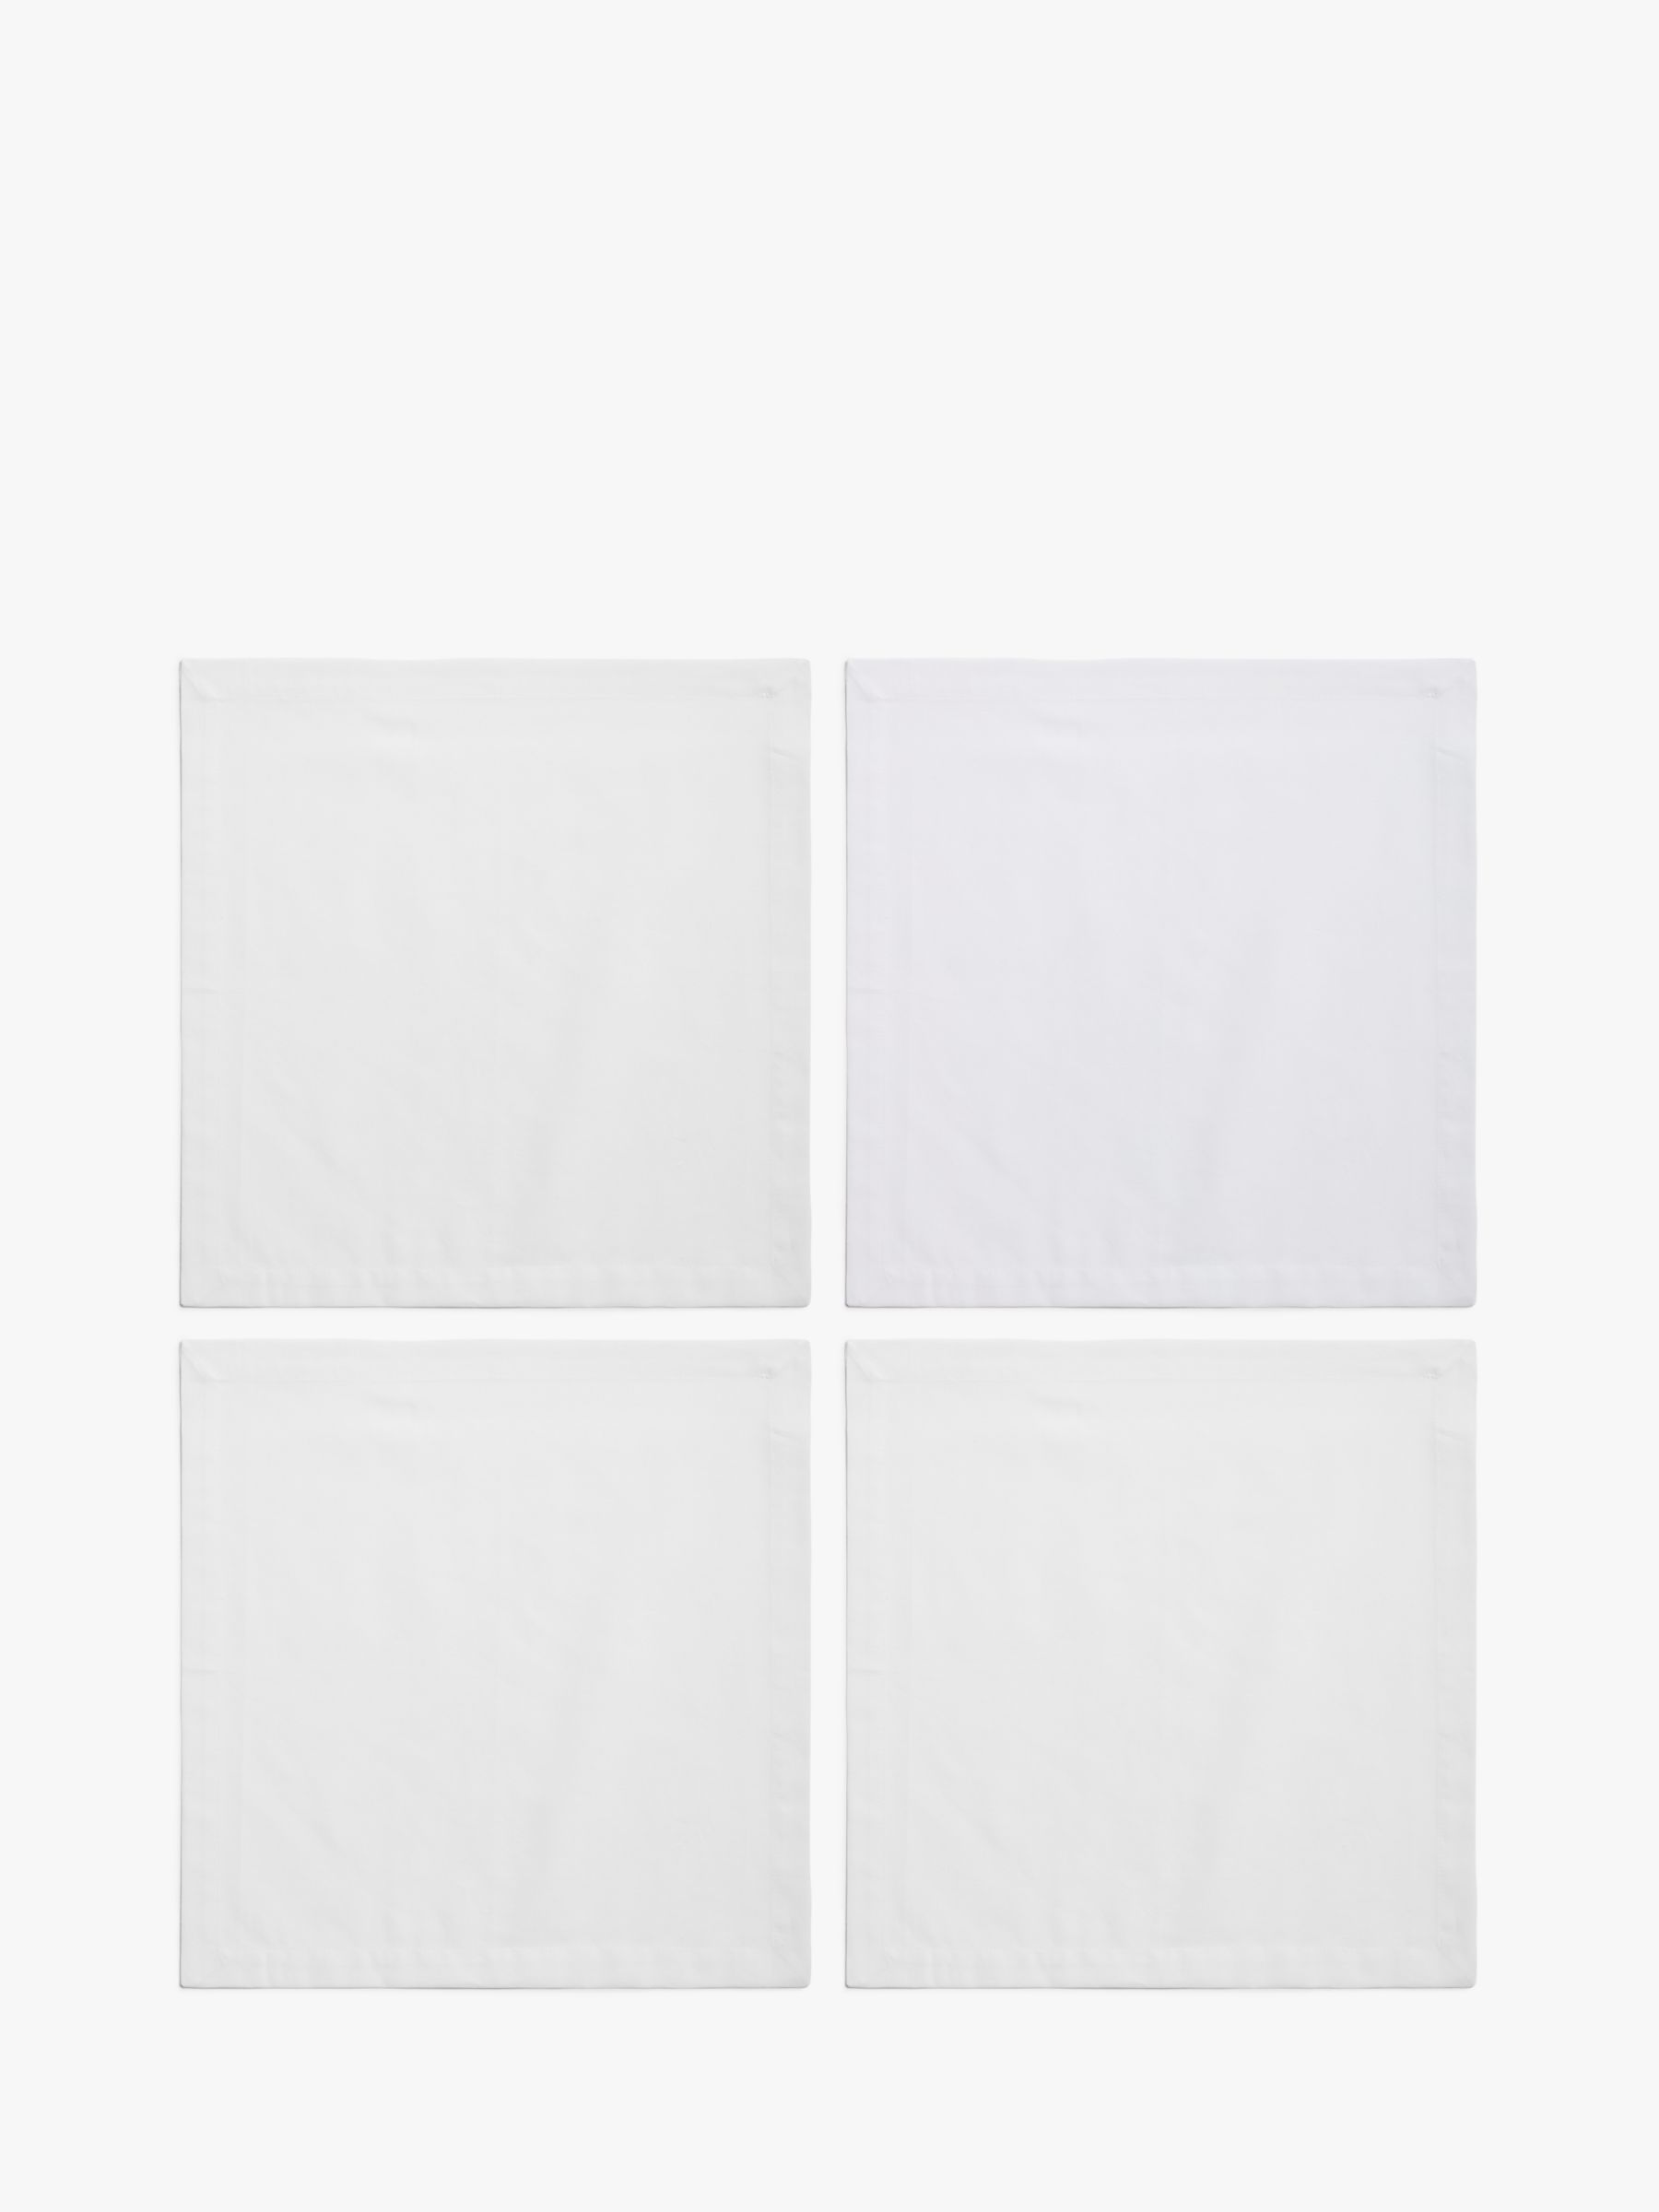 ANYDAY John Lewis & Partners Cotton Napkins, Set of 4, White